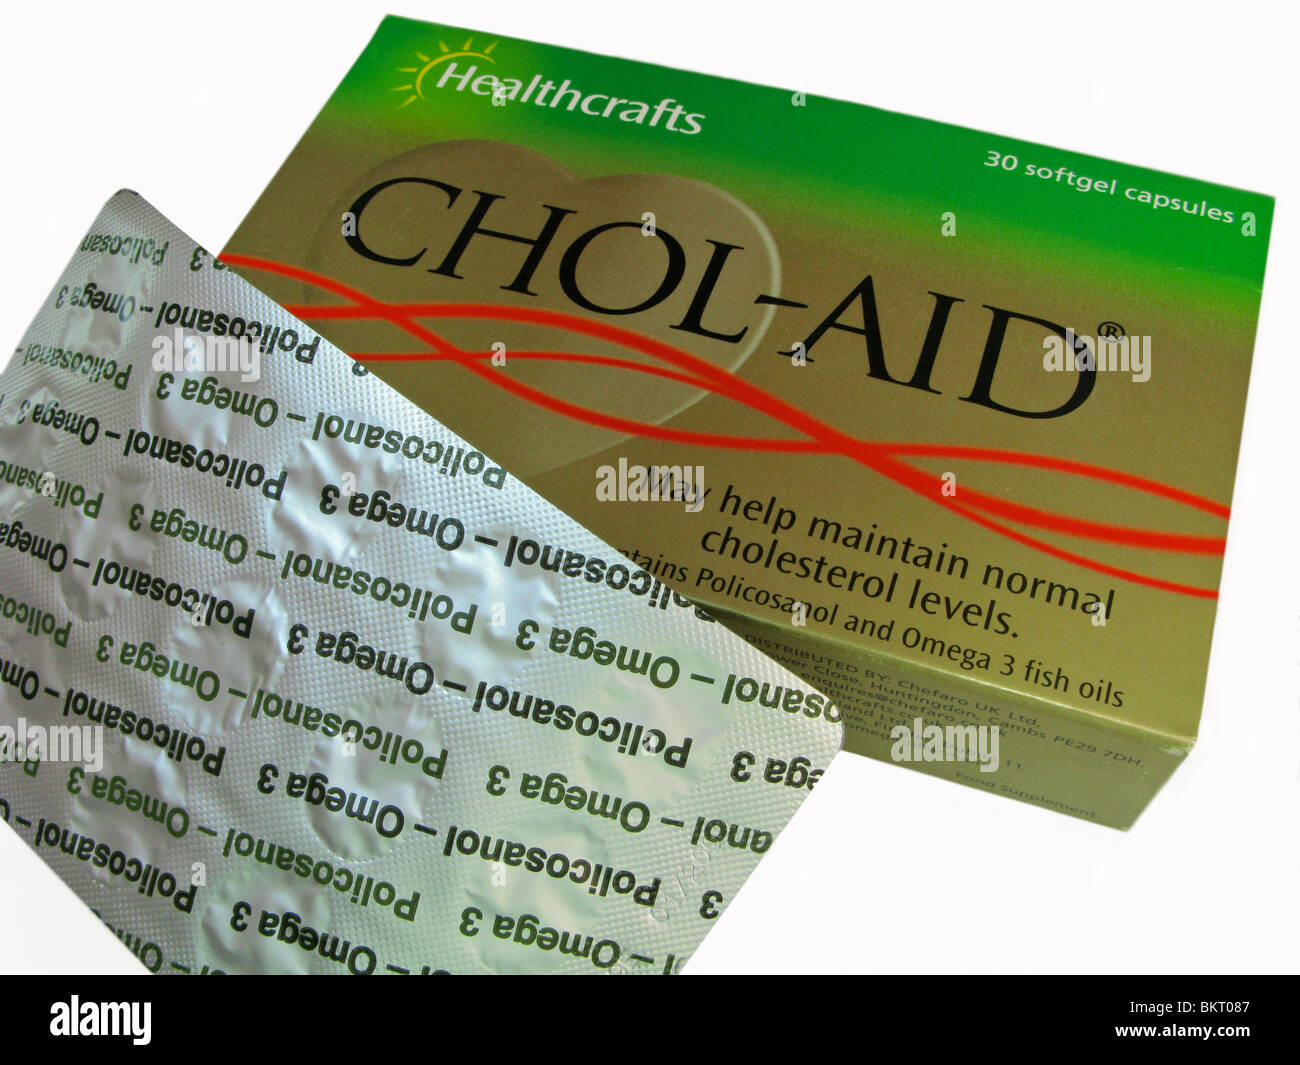 Chol - capsule di aiuto un rimedio naturale per aiutare a mantenere i livelli di colesterolo contenente policosanol & omega di oli di pesce Foto Stock